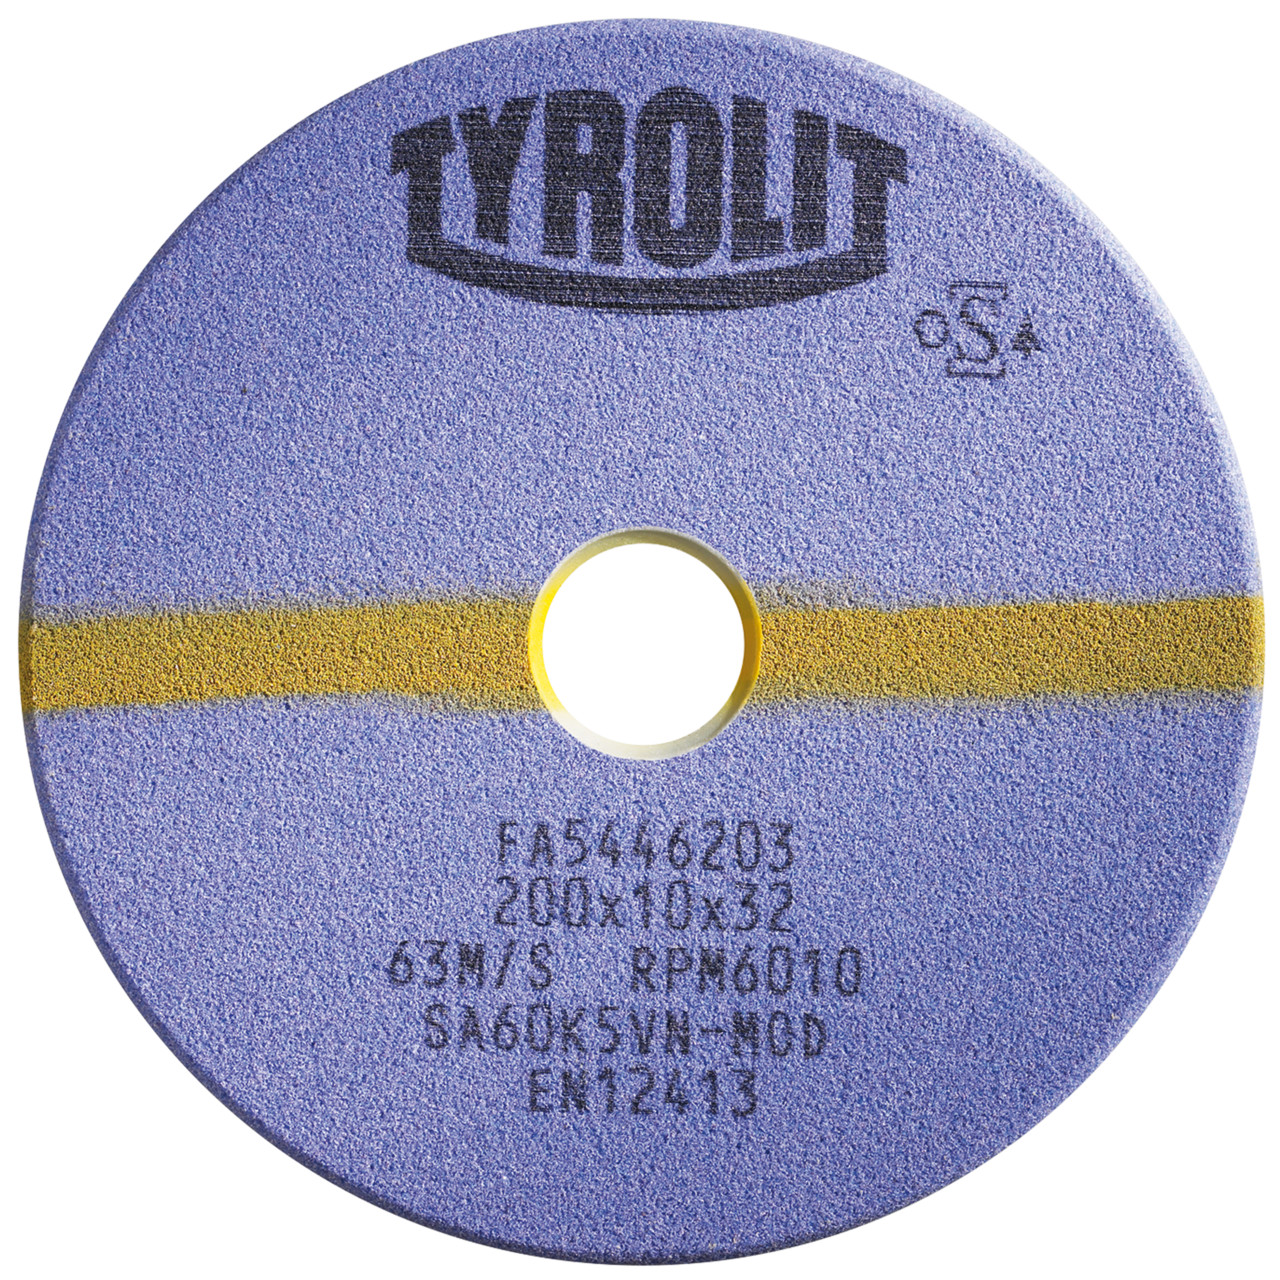 TYROLIT Schleifwerkzeuge für Sägeschärfautomaten DxTxH 150x8x32 Für Kreissägen und stellitierte Band- und Gattersägen, Form: 1C, Art. 441302